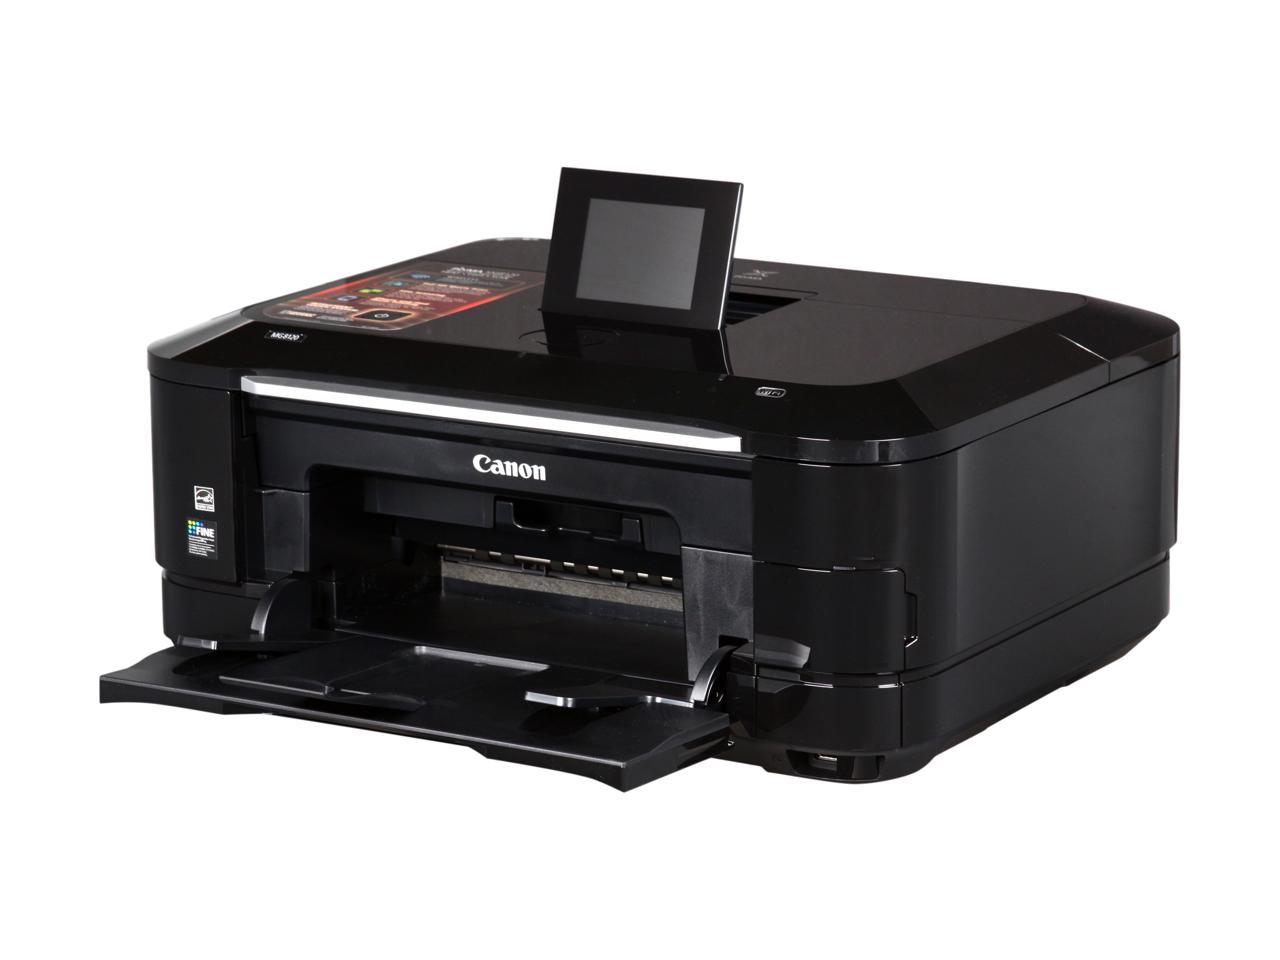 canon pixma mp990 wireless photo all in one printer